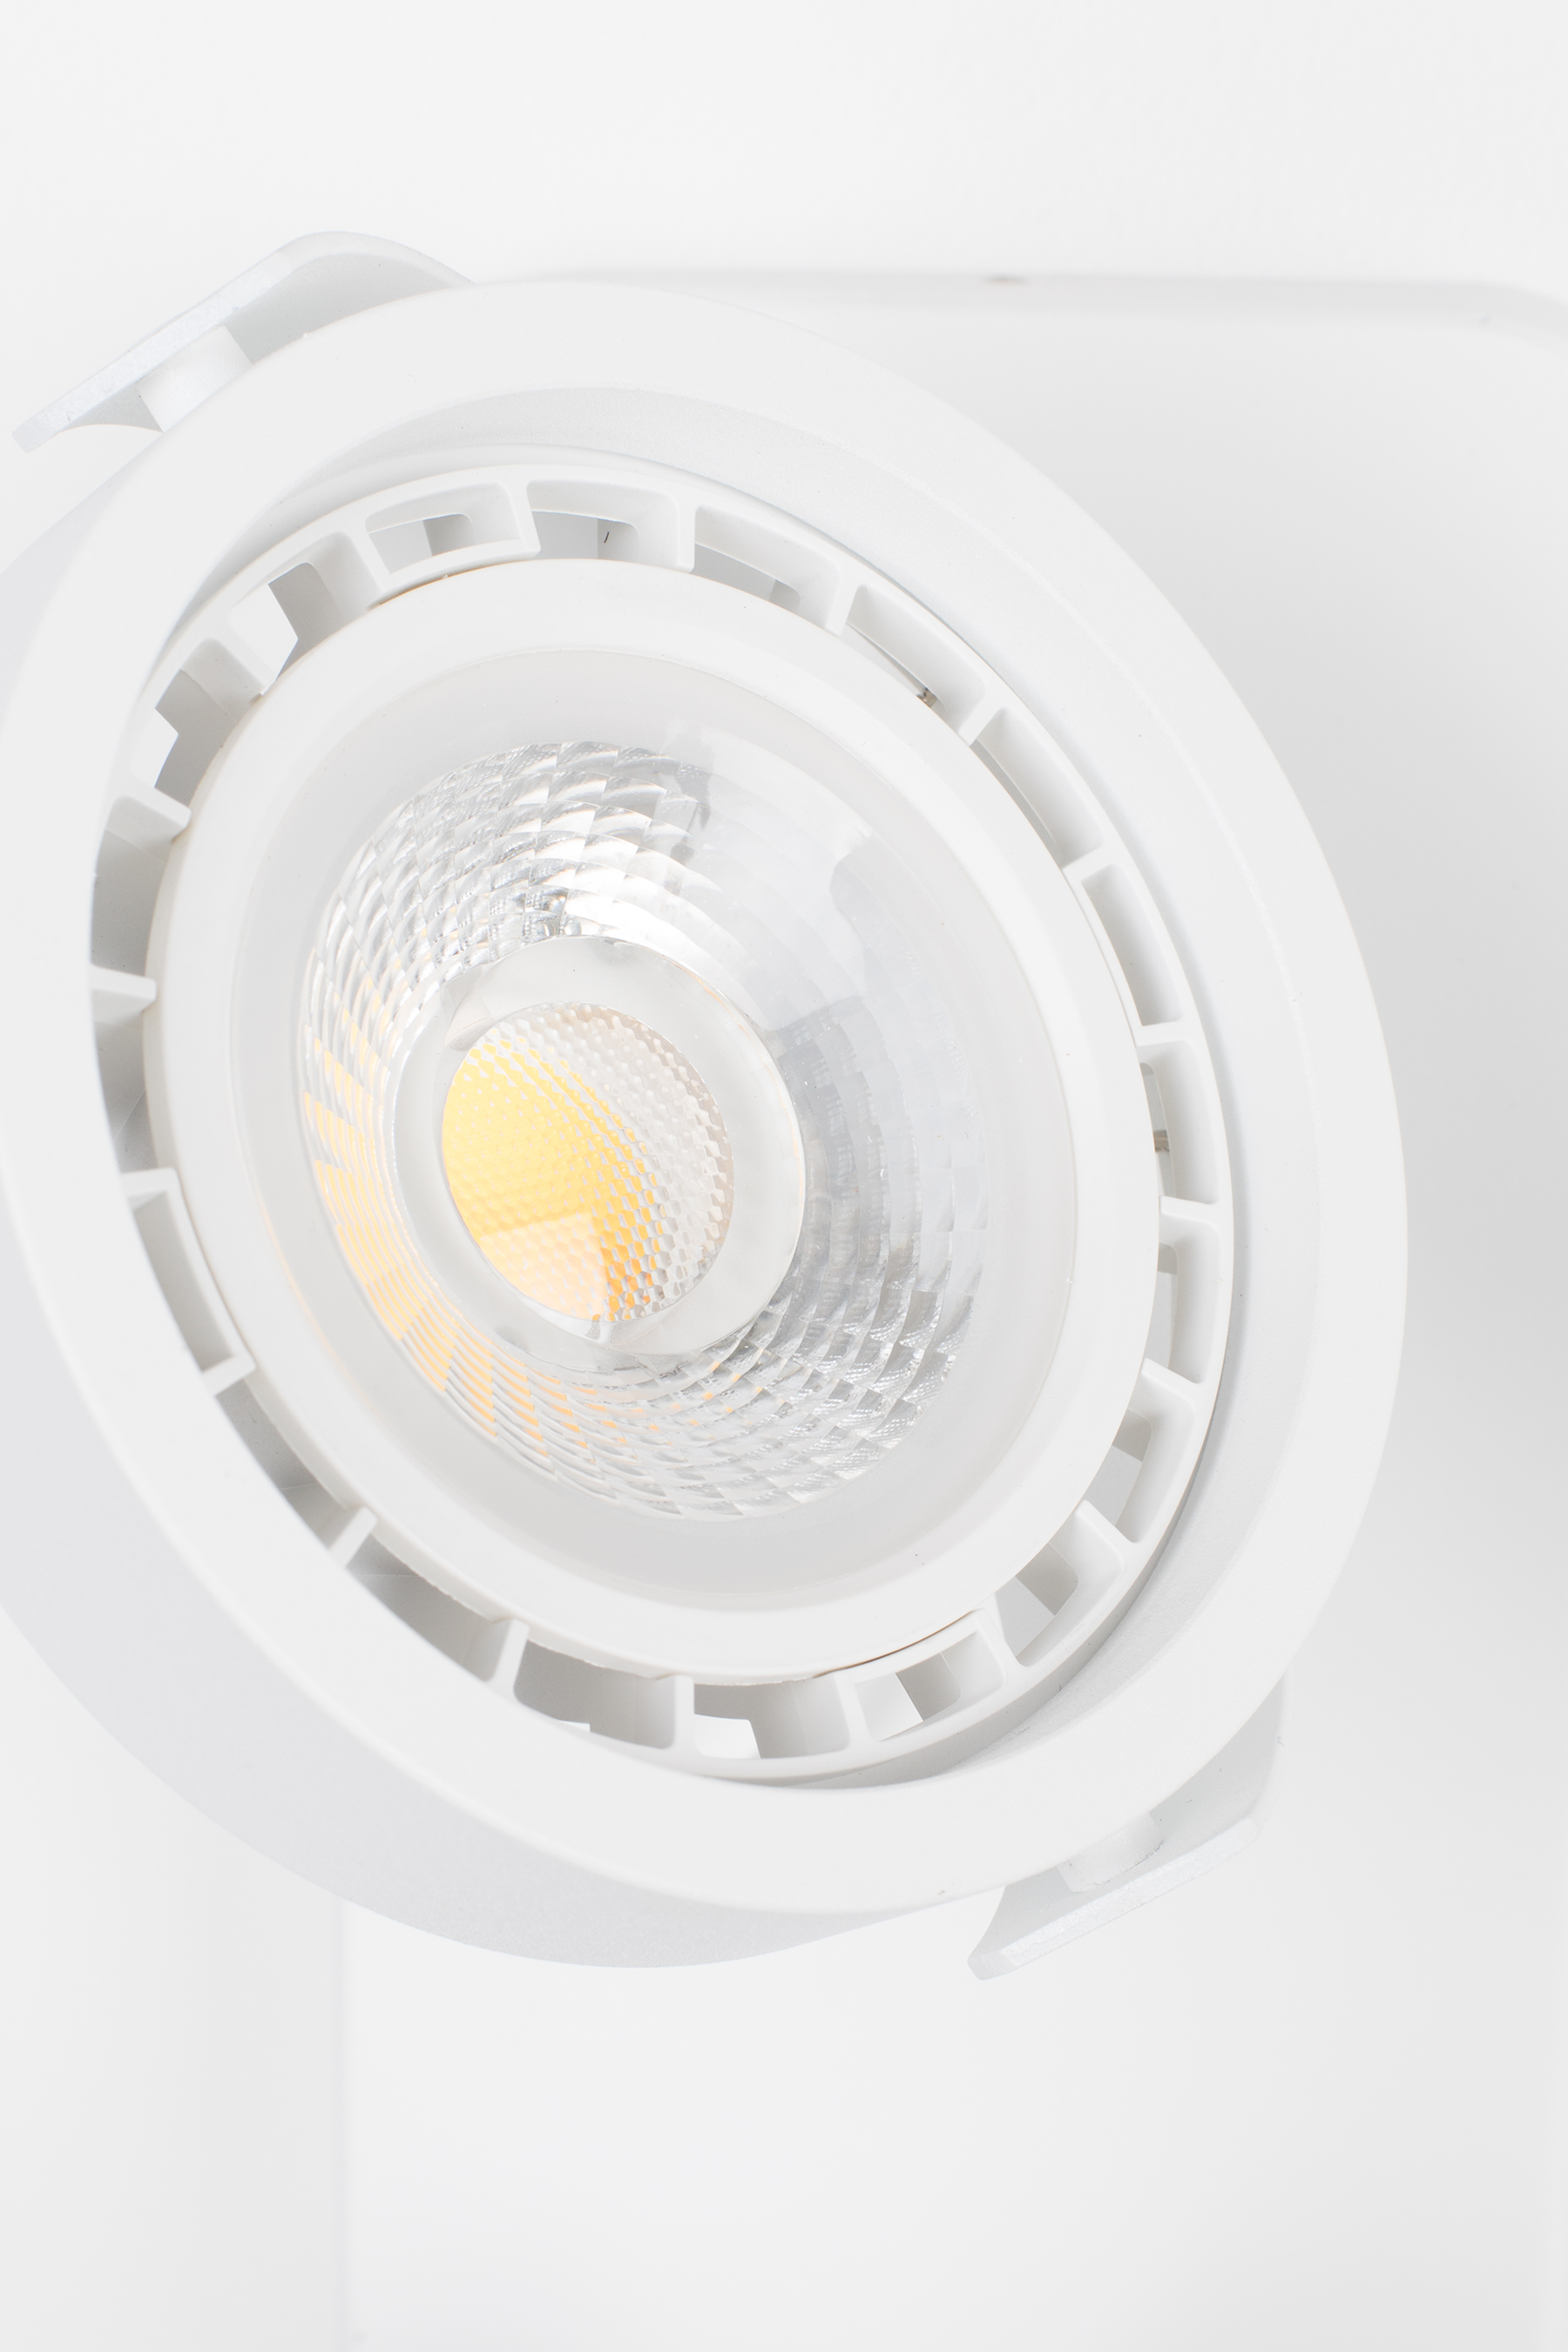 SPOT Light Dice 2 DTW - KAQTU Design